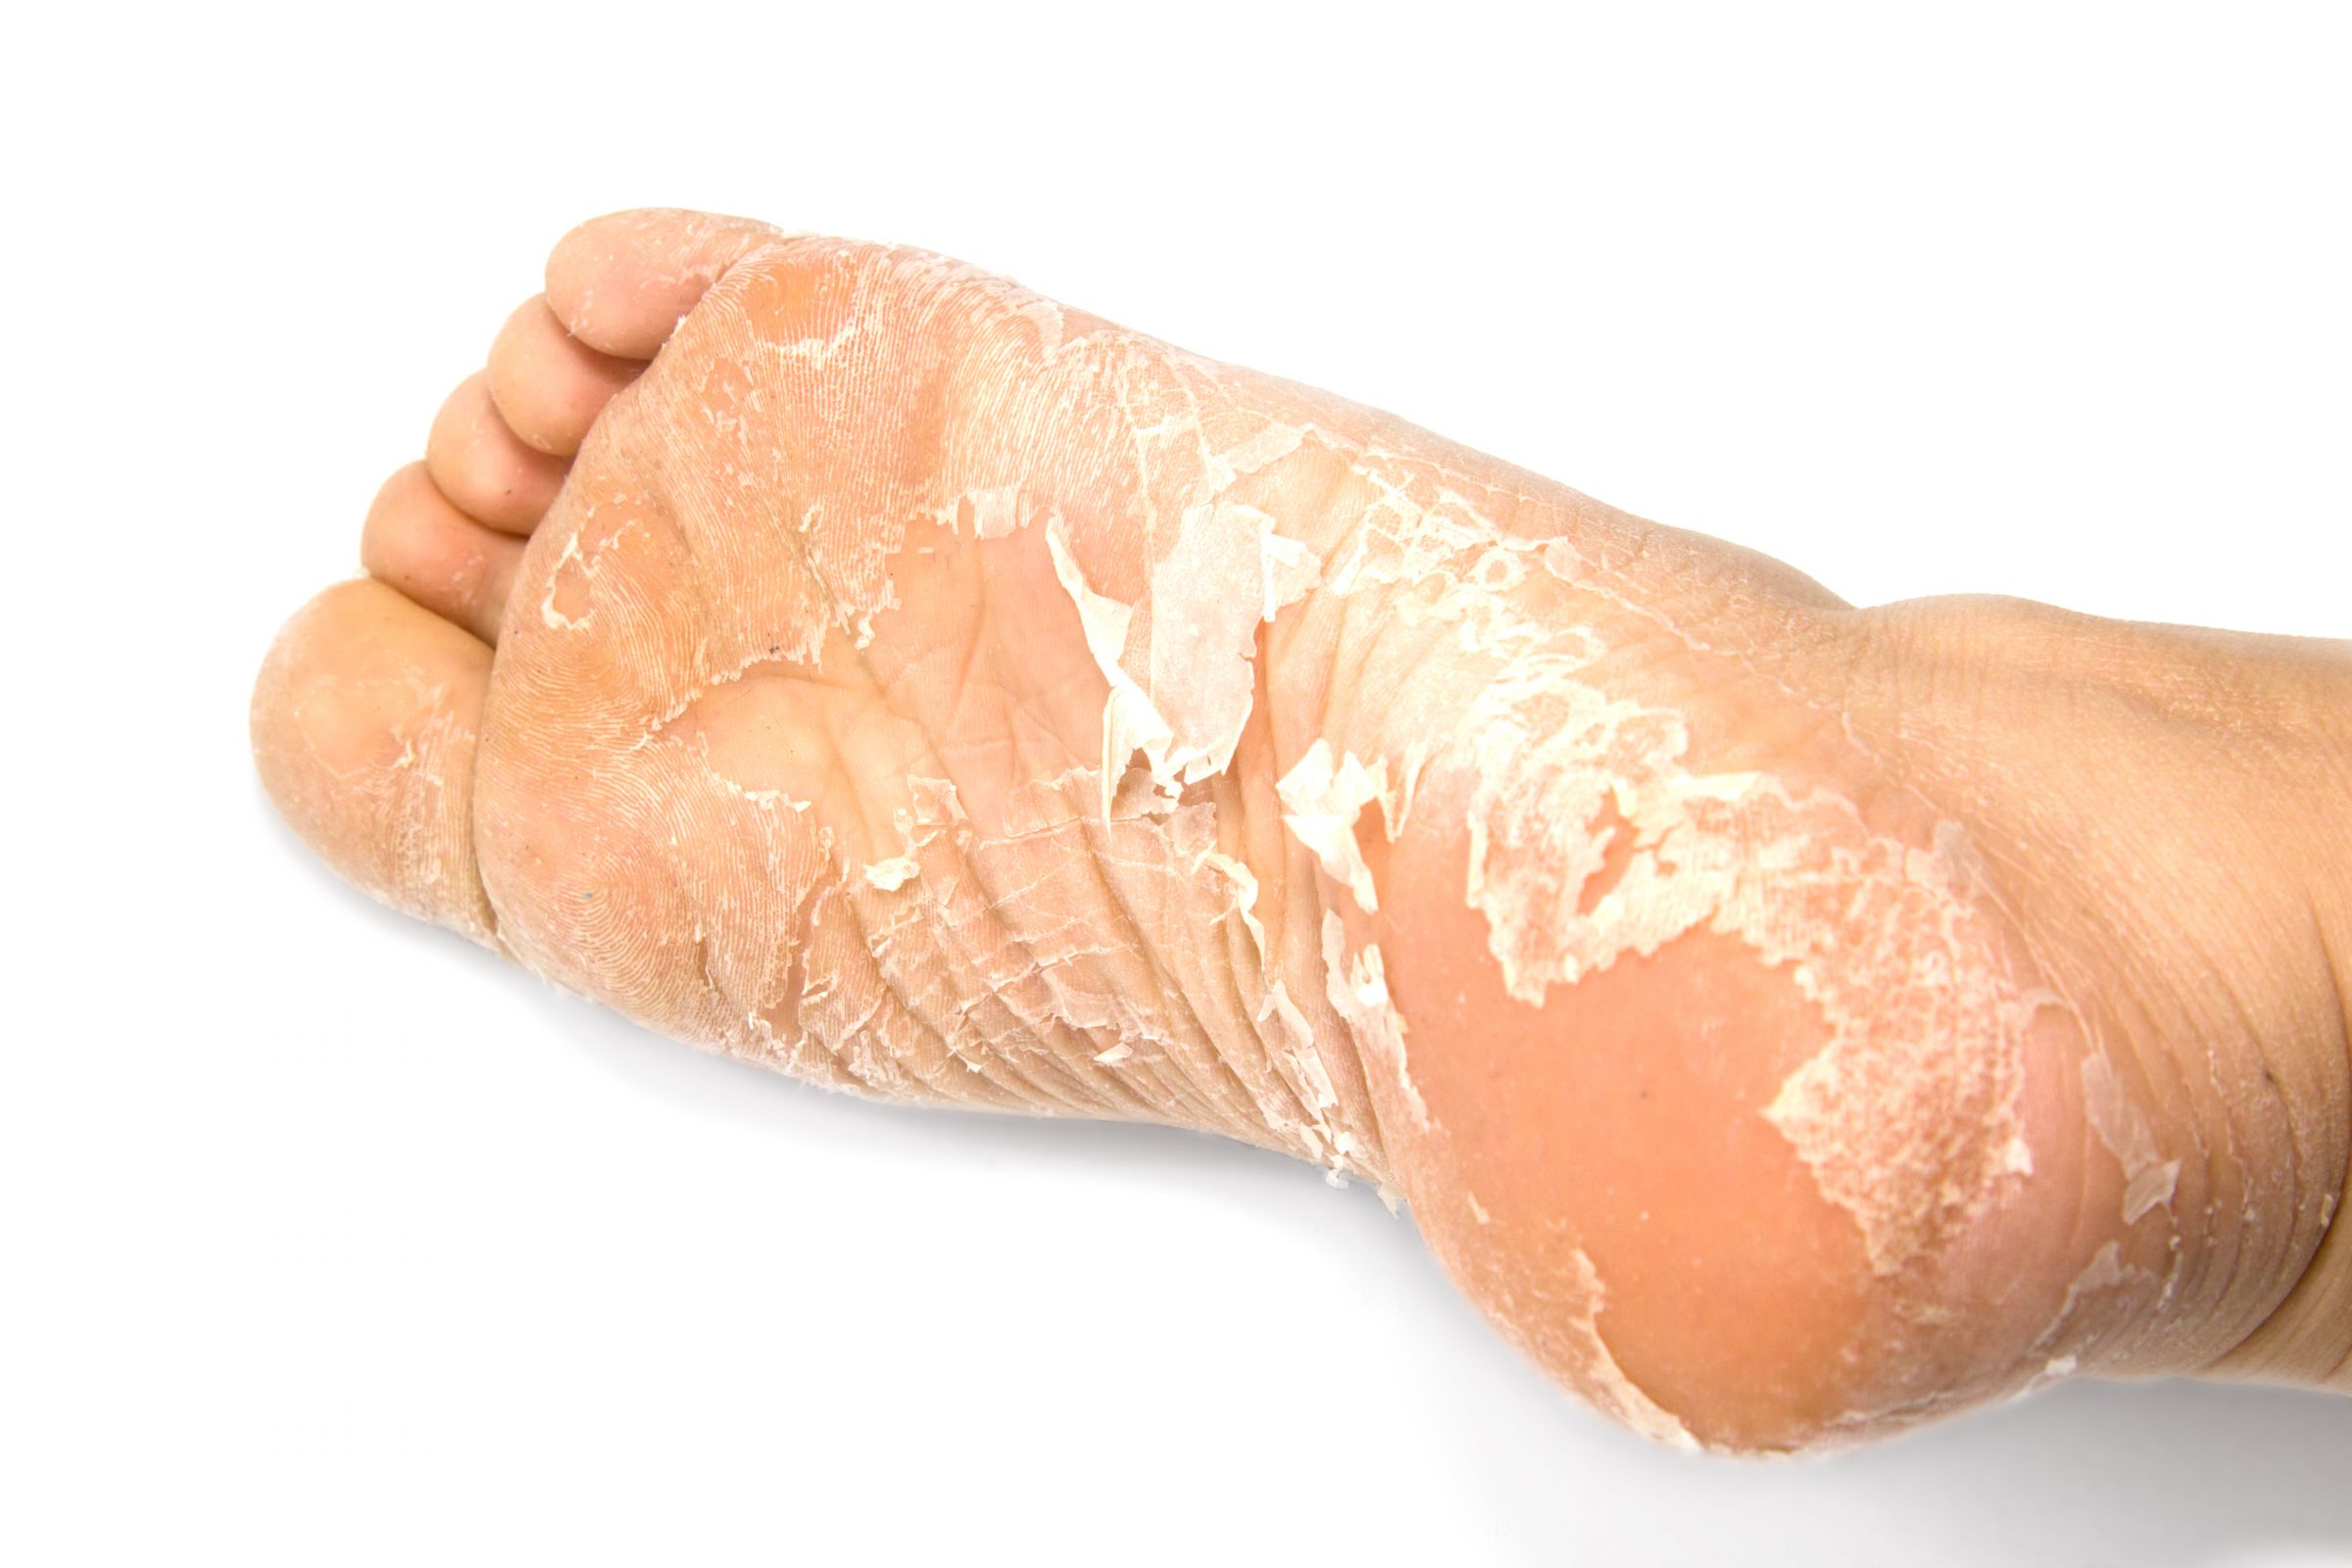 หน้ากากลอกเท้าเป็นหนึ่งในหน้ากากเท้าที่ลูกค้าของ BIOCROWN สามารถซื้อได้